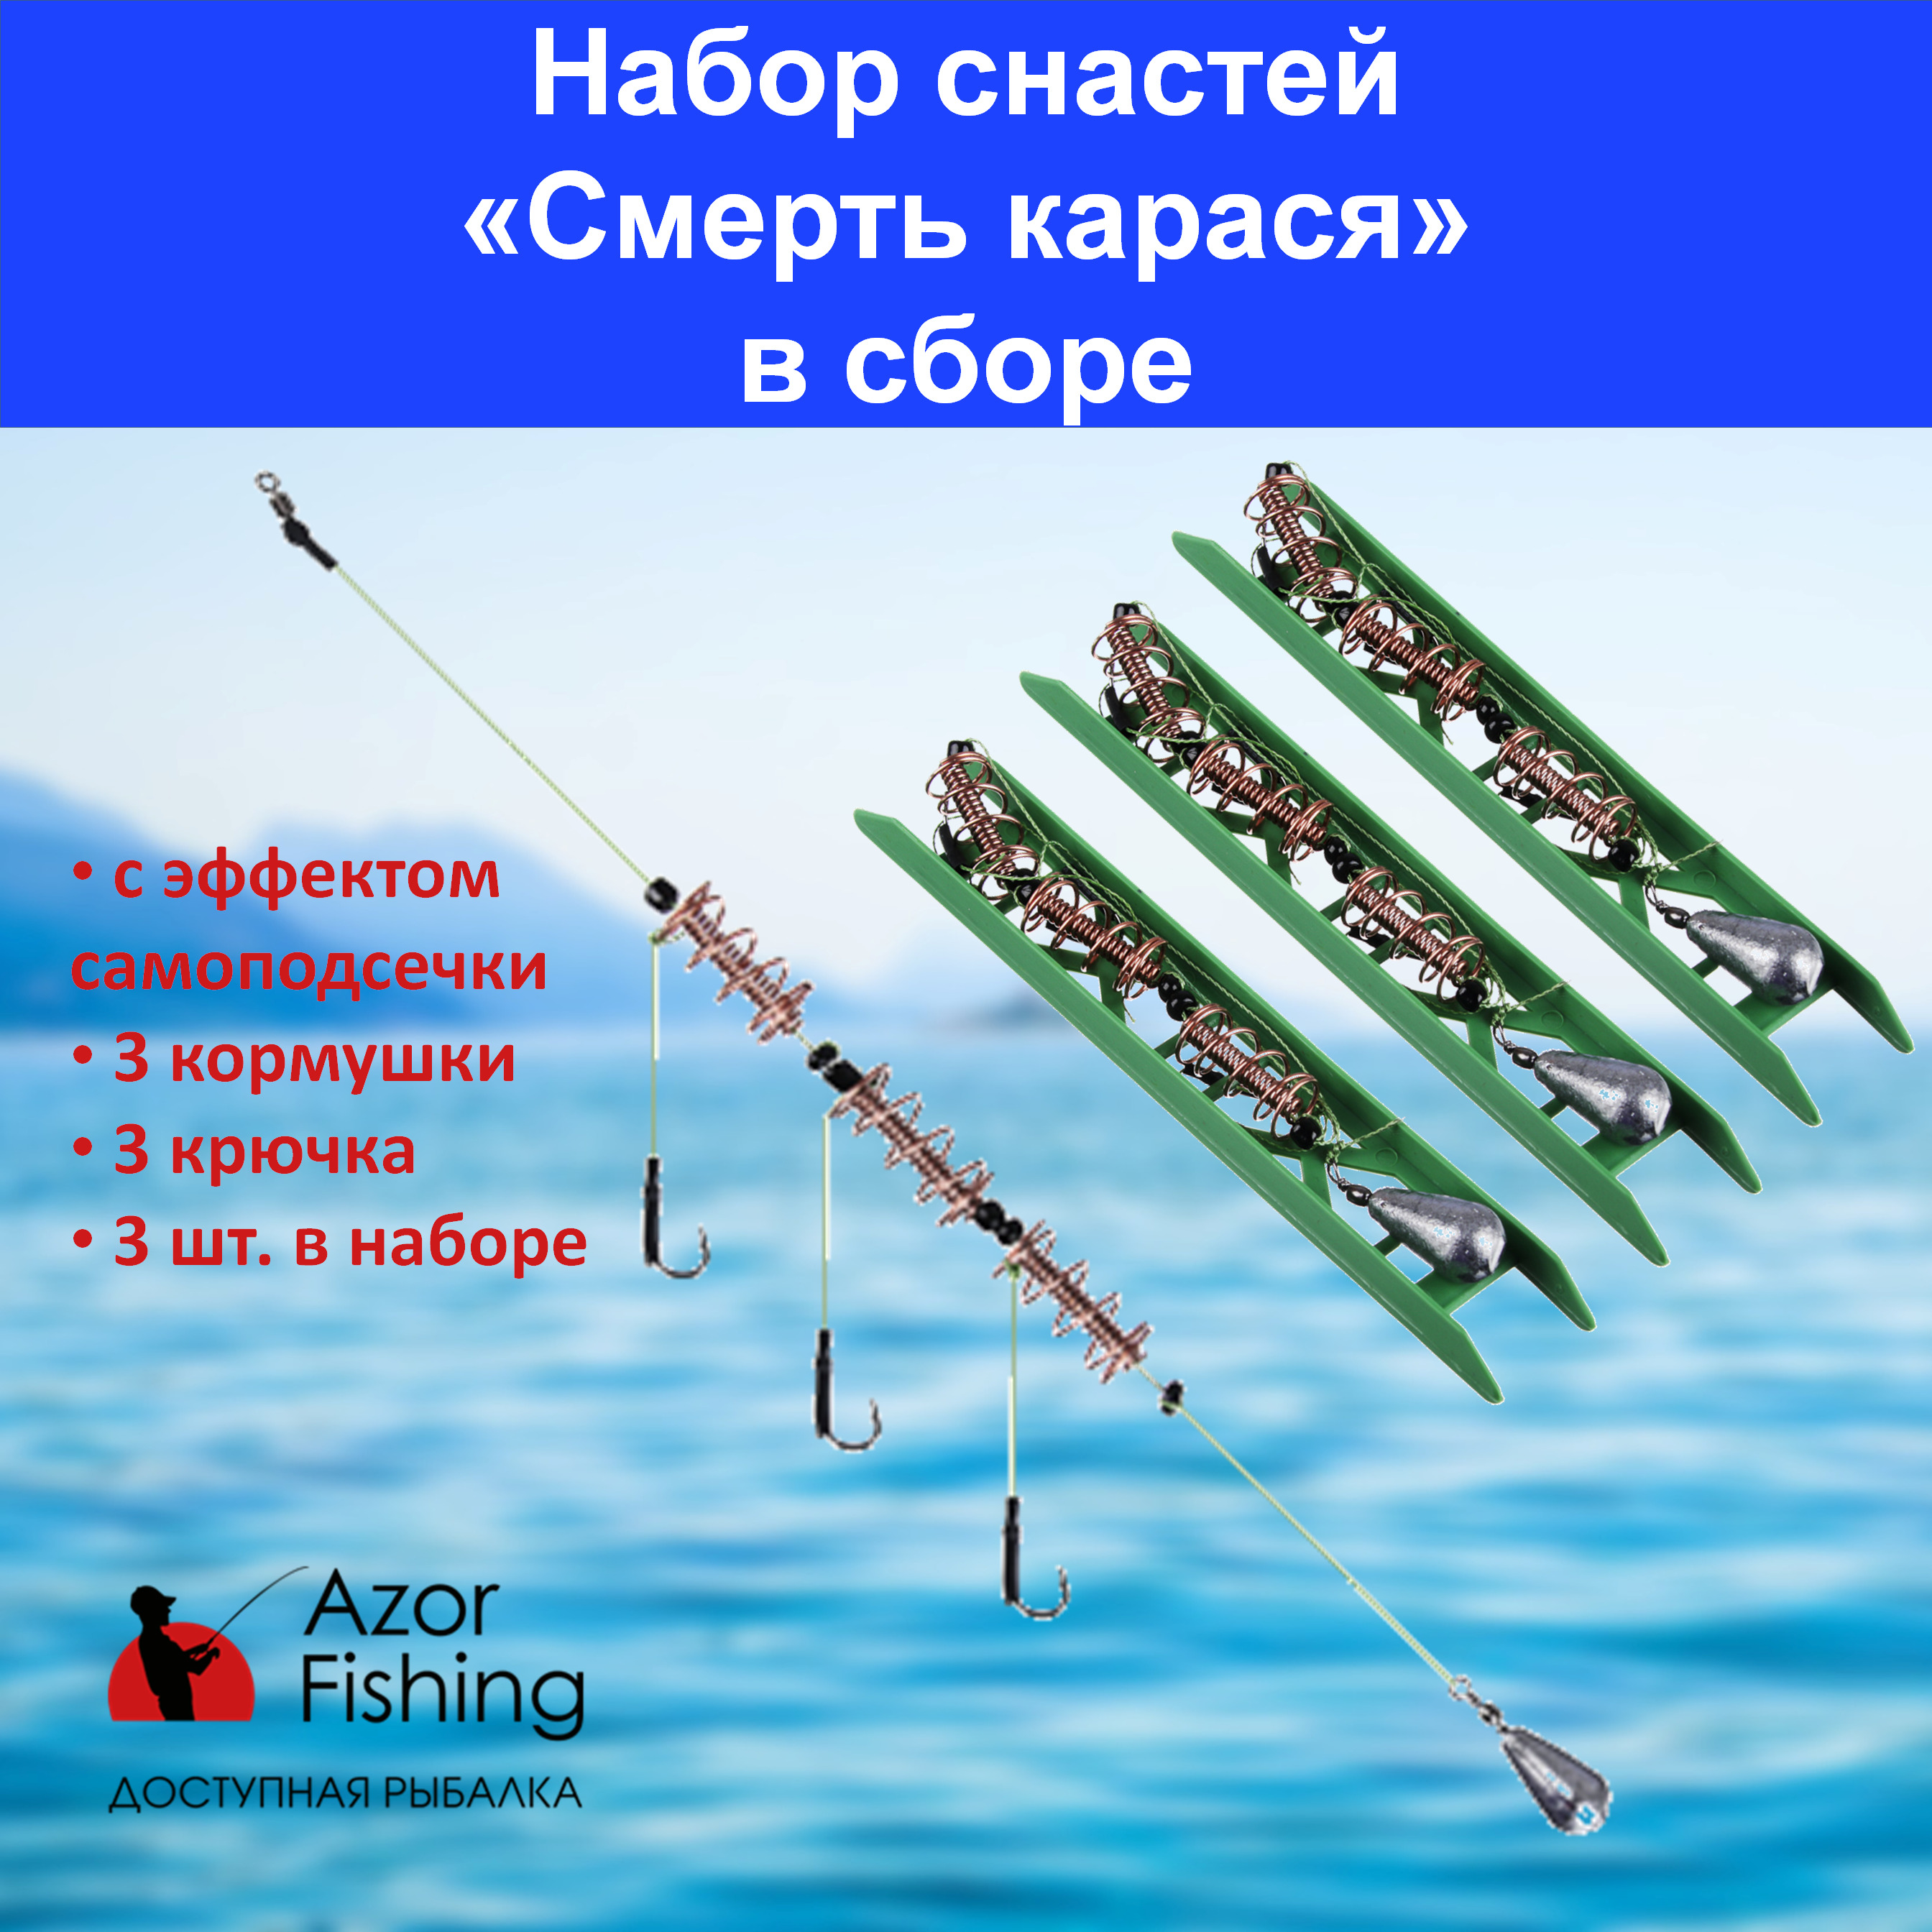 Фидерная рыбалка на карася: советы, техника, настройка снастей